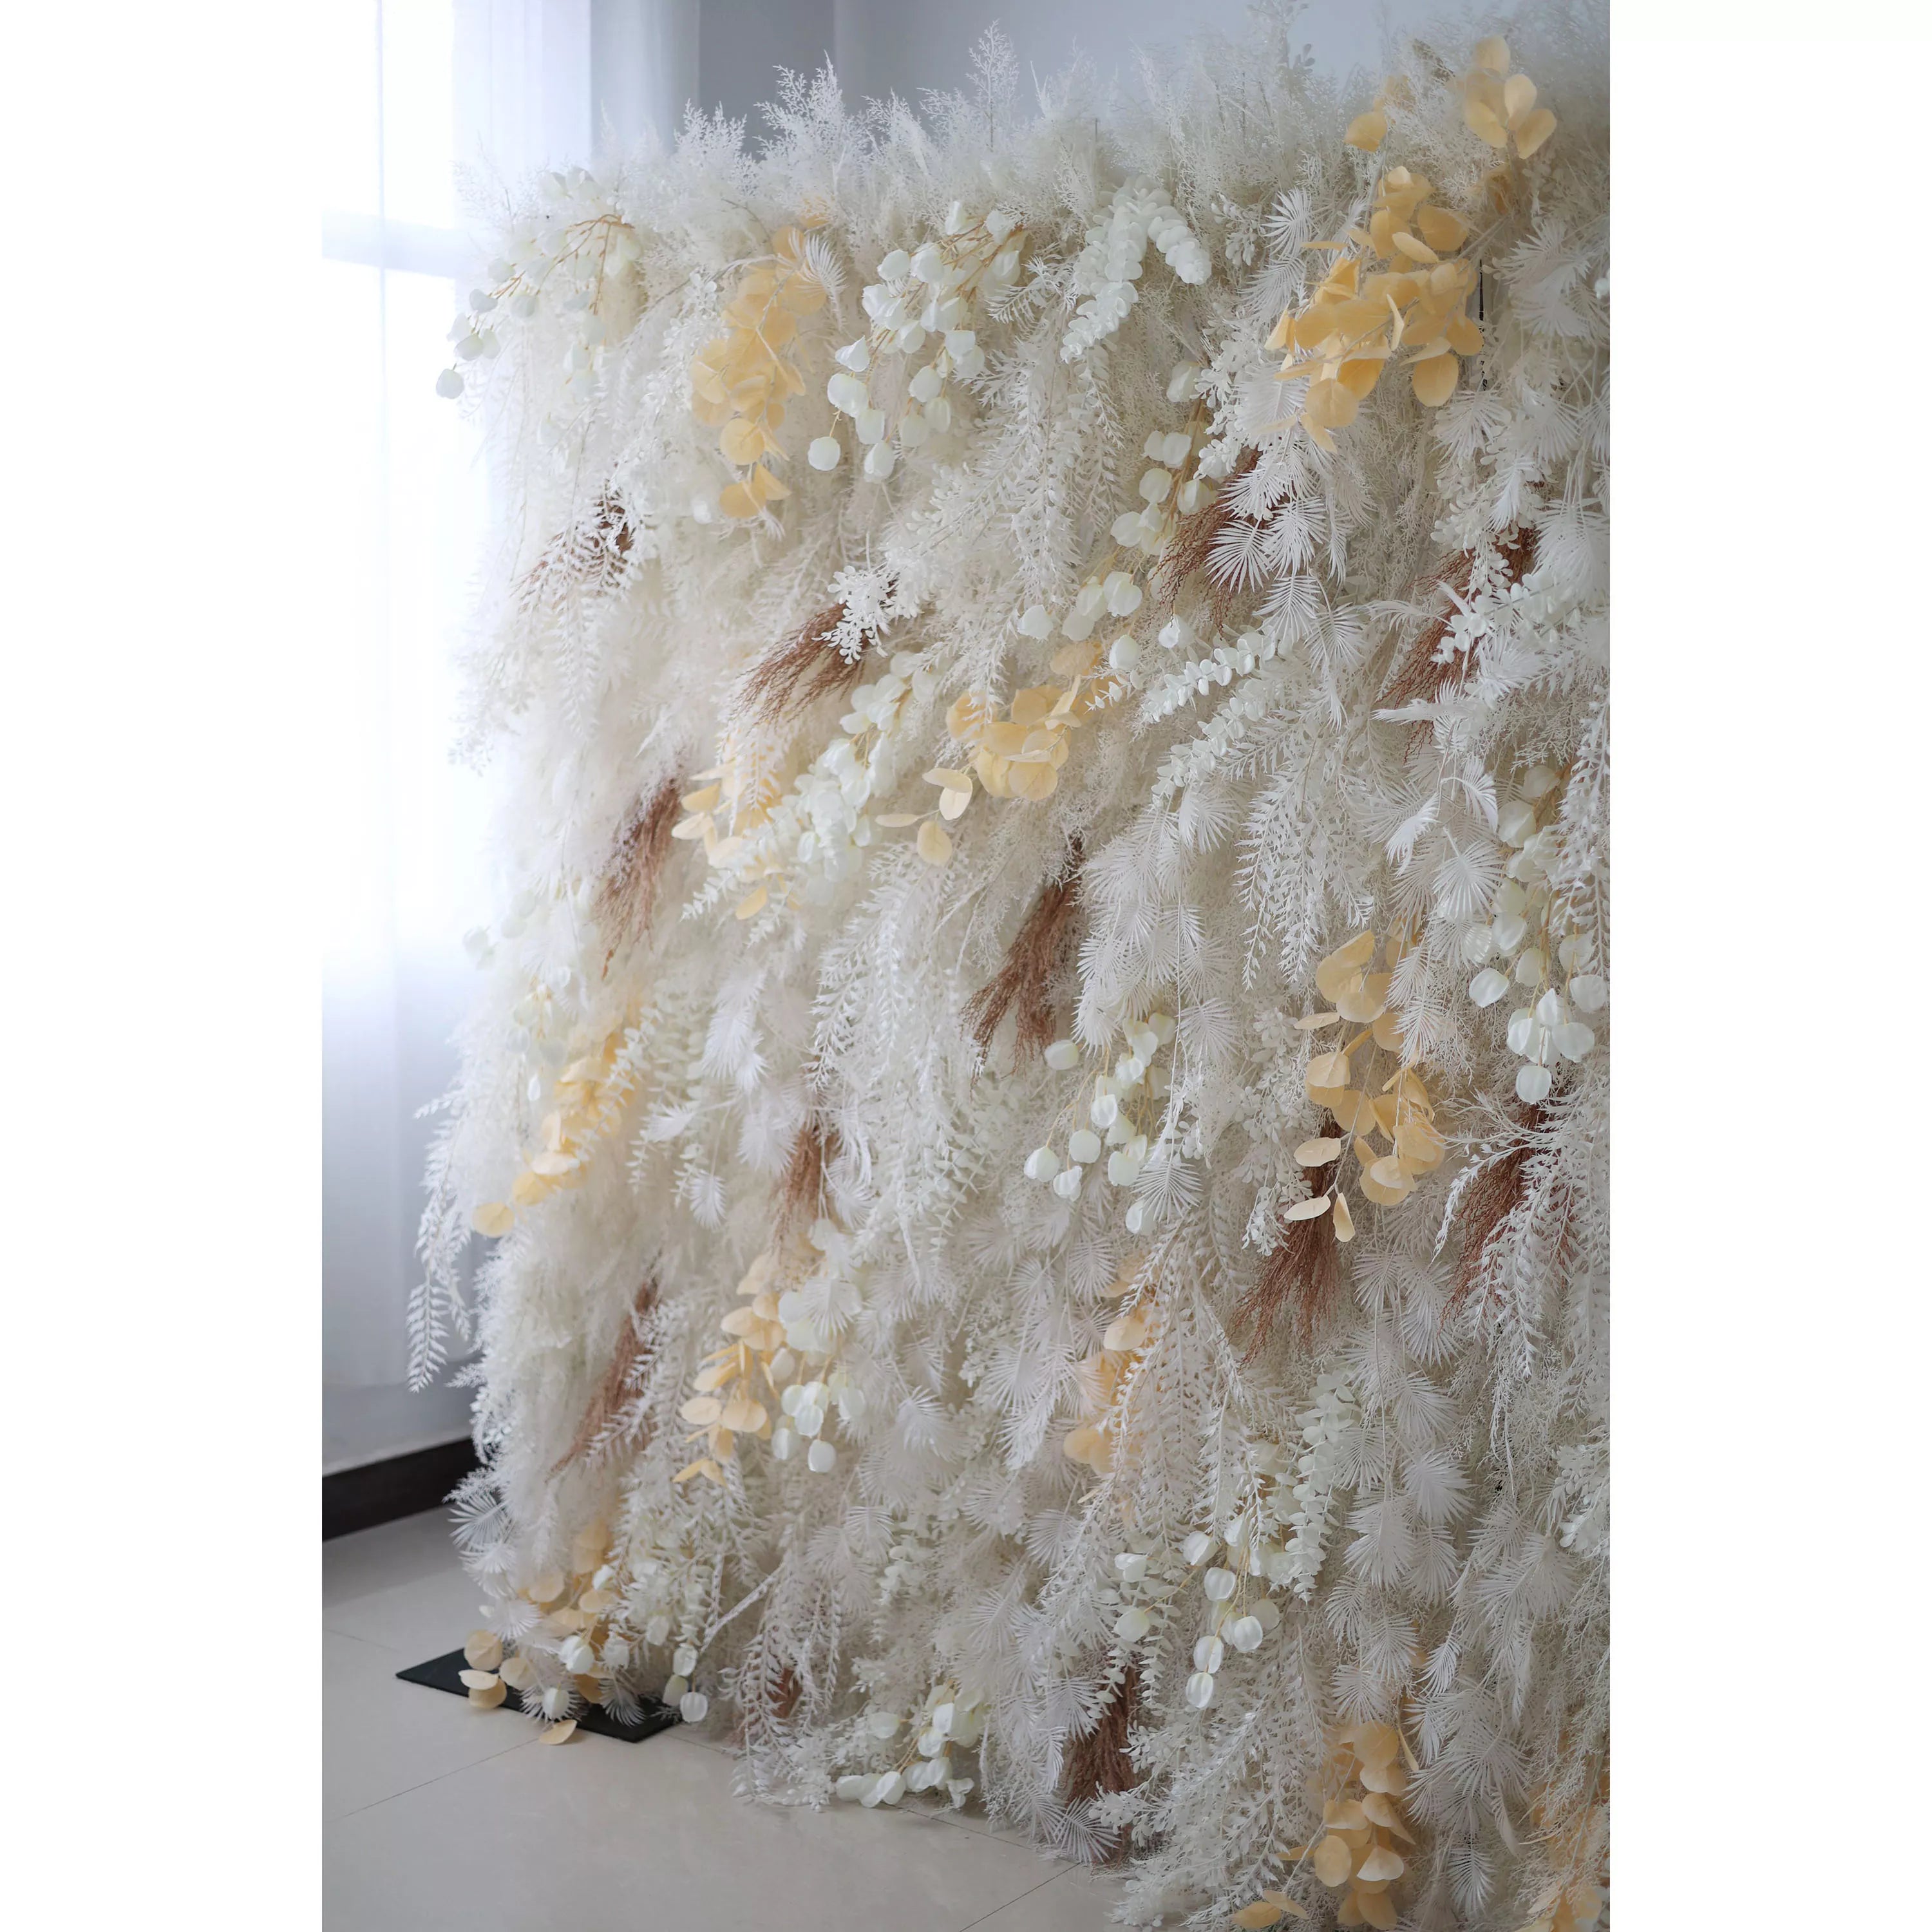 Valar Flower dévoile : Le paysage de neige enchanté – Un majestueux mur de fleurs en tissu artificiel composé de blancs hivernaux et de fleurs dorées-VF-208 